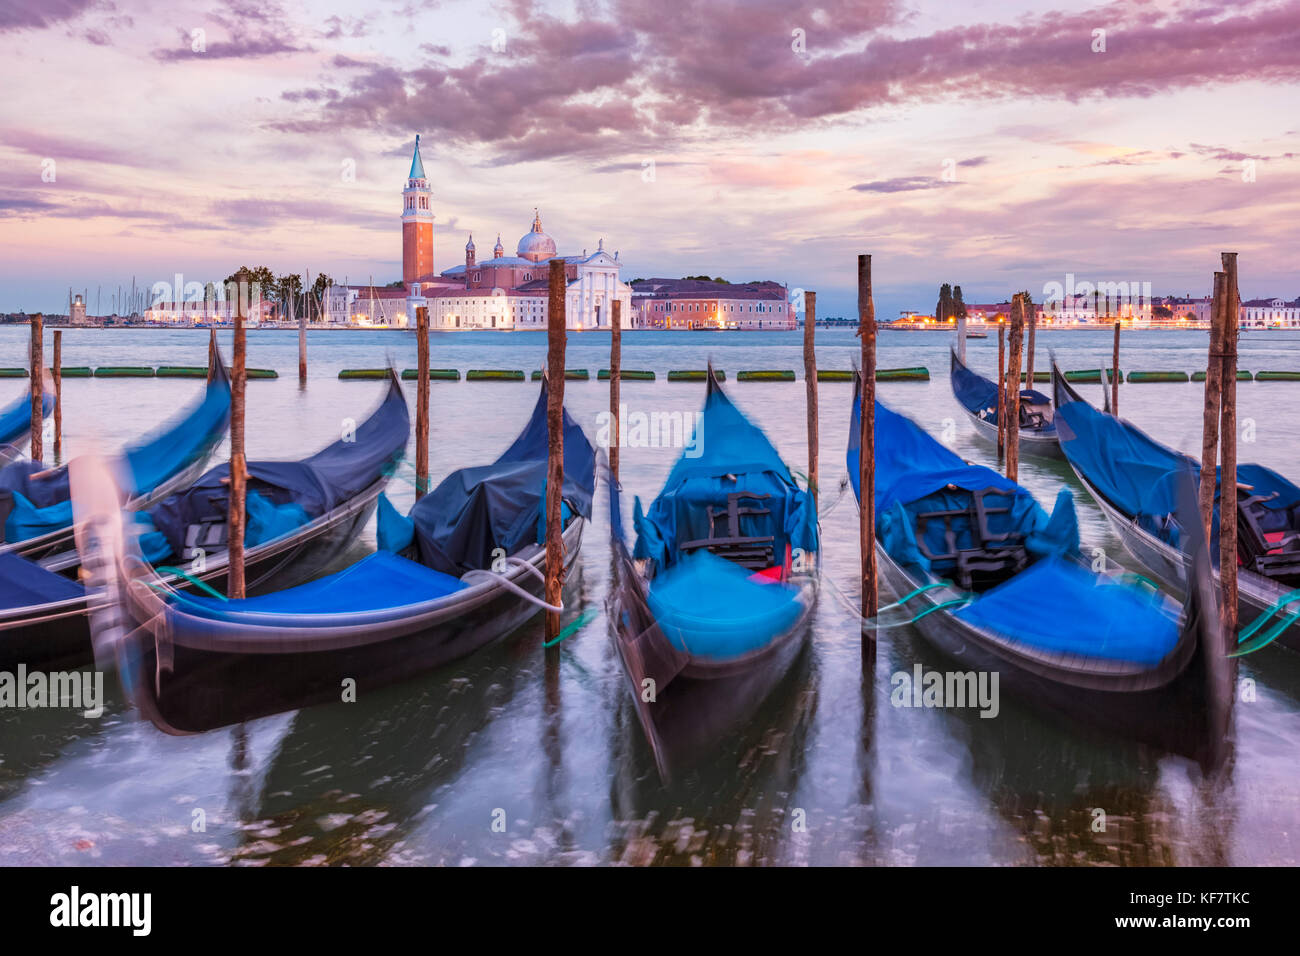 Italie Venise gondoles amarrées italie gondoles sur le Grand Canal Venise face à l'île de San Giorgio Maggiore Venise Italie Europe de l'UE Banque D'Images